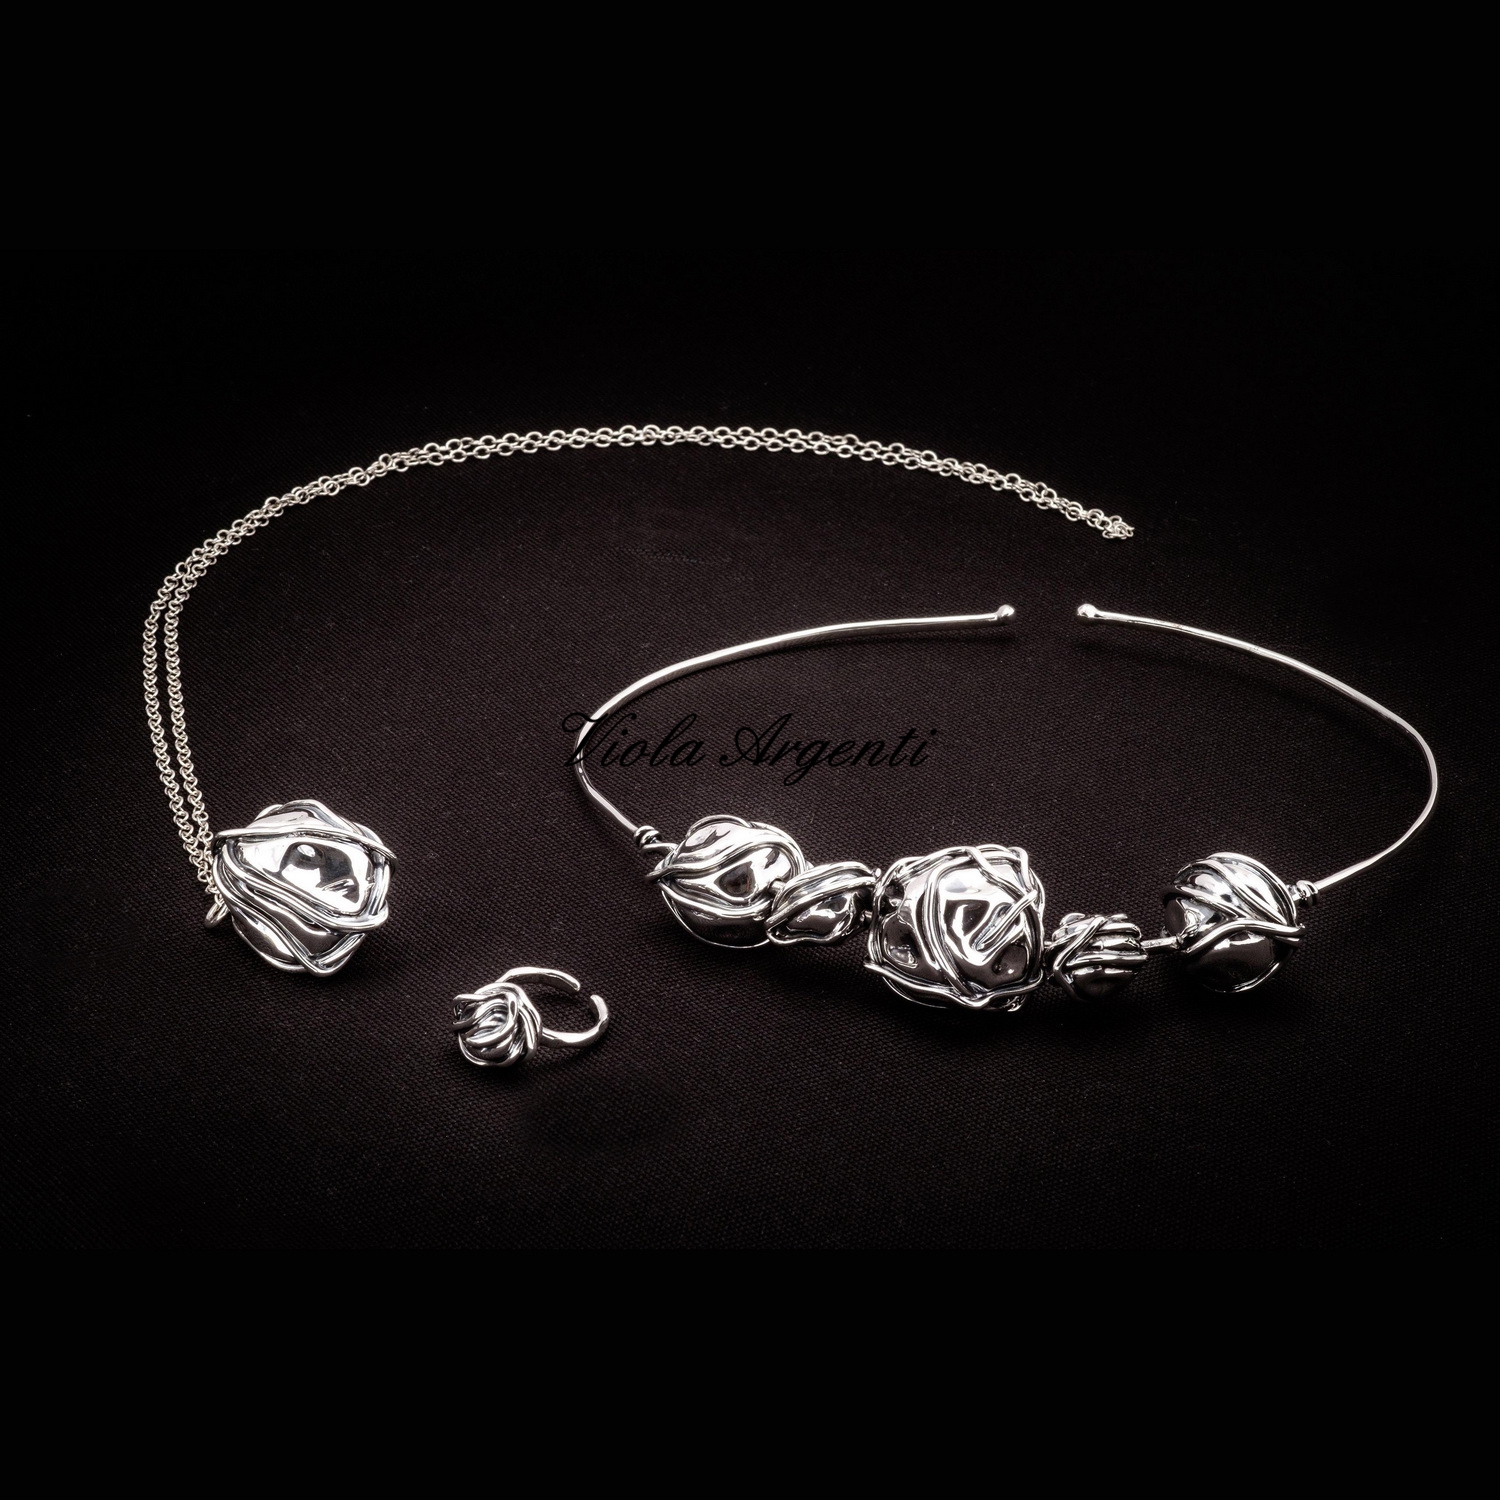 Collana girocollo e anello a sfera con lavorazione a filo argento 925 di Arte Fiorentina. Argento online